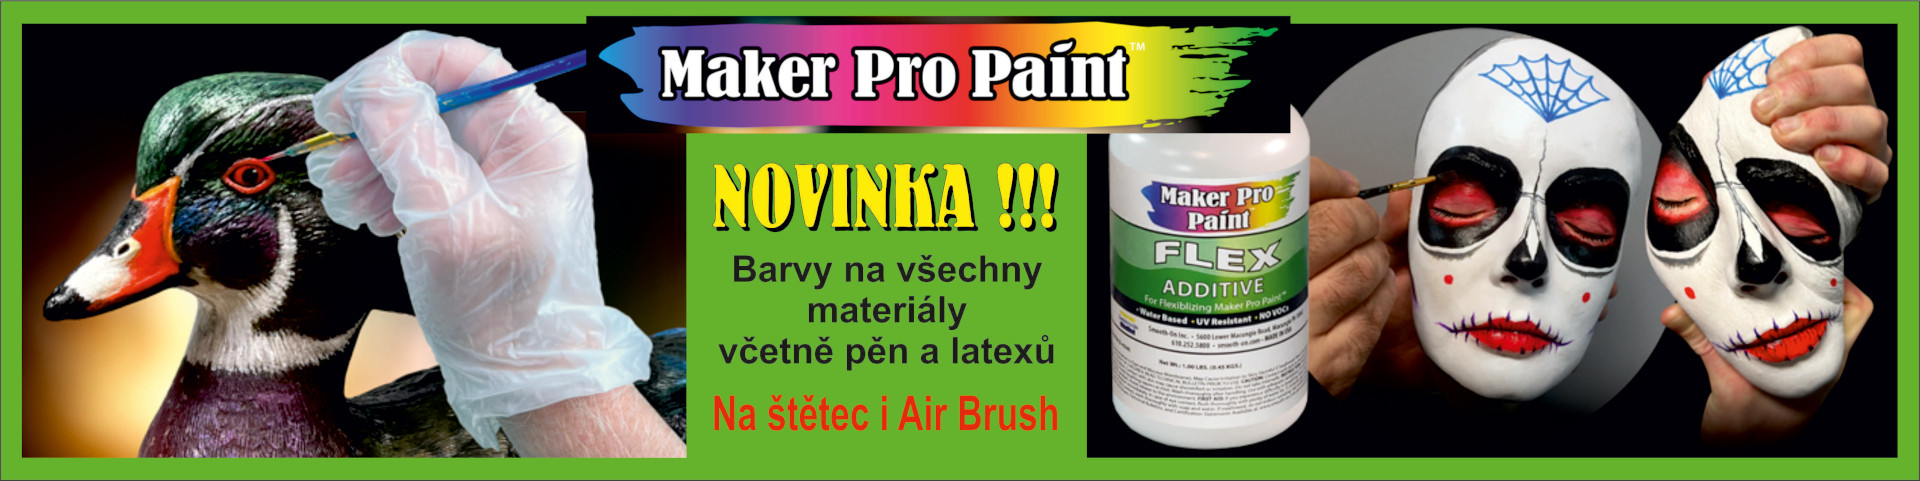 Maker Pro Paint